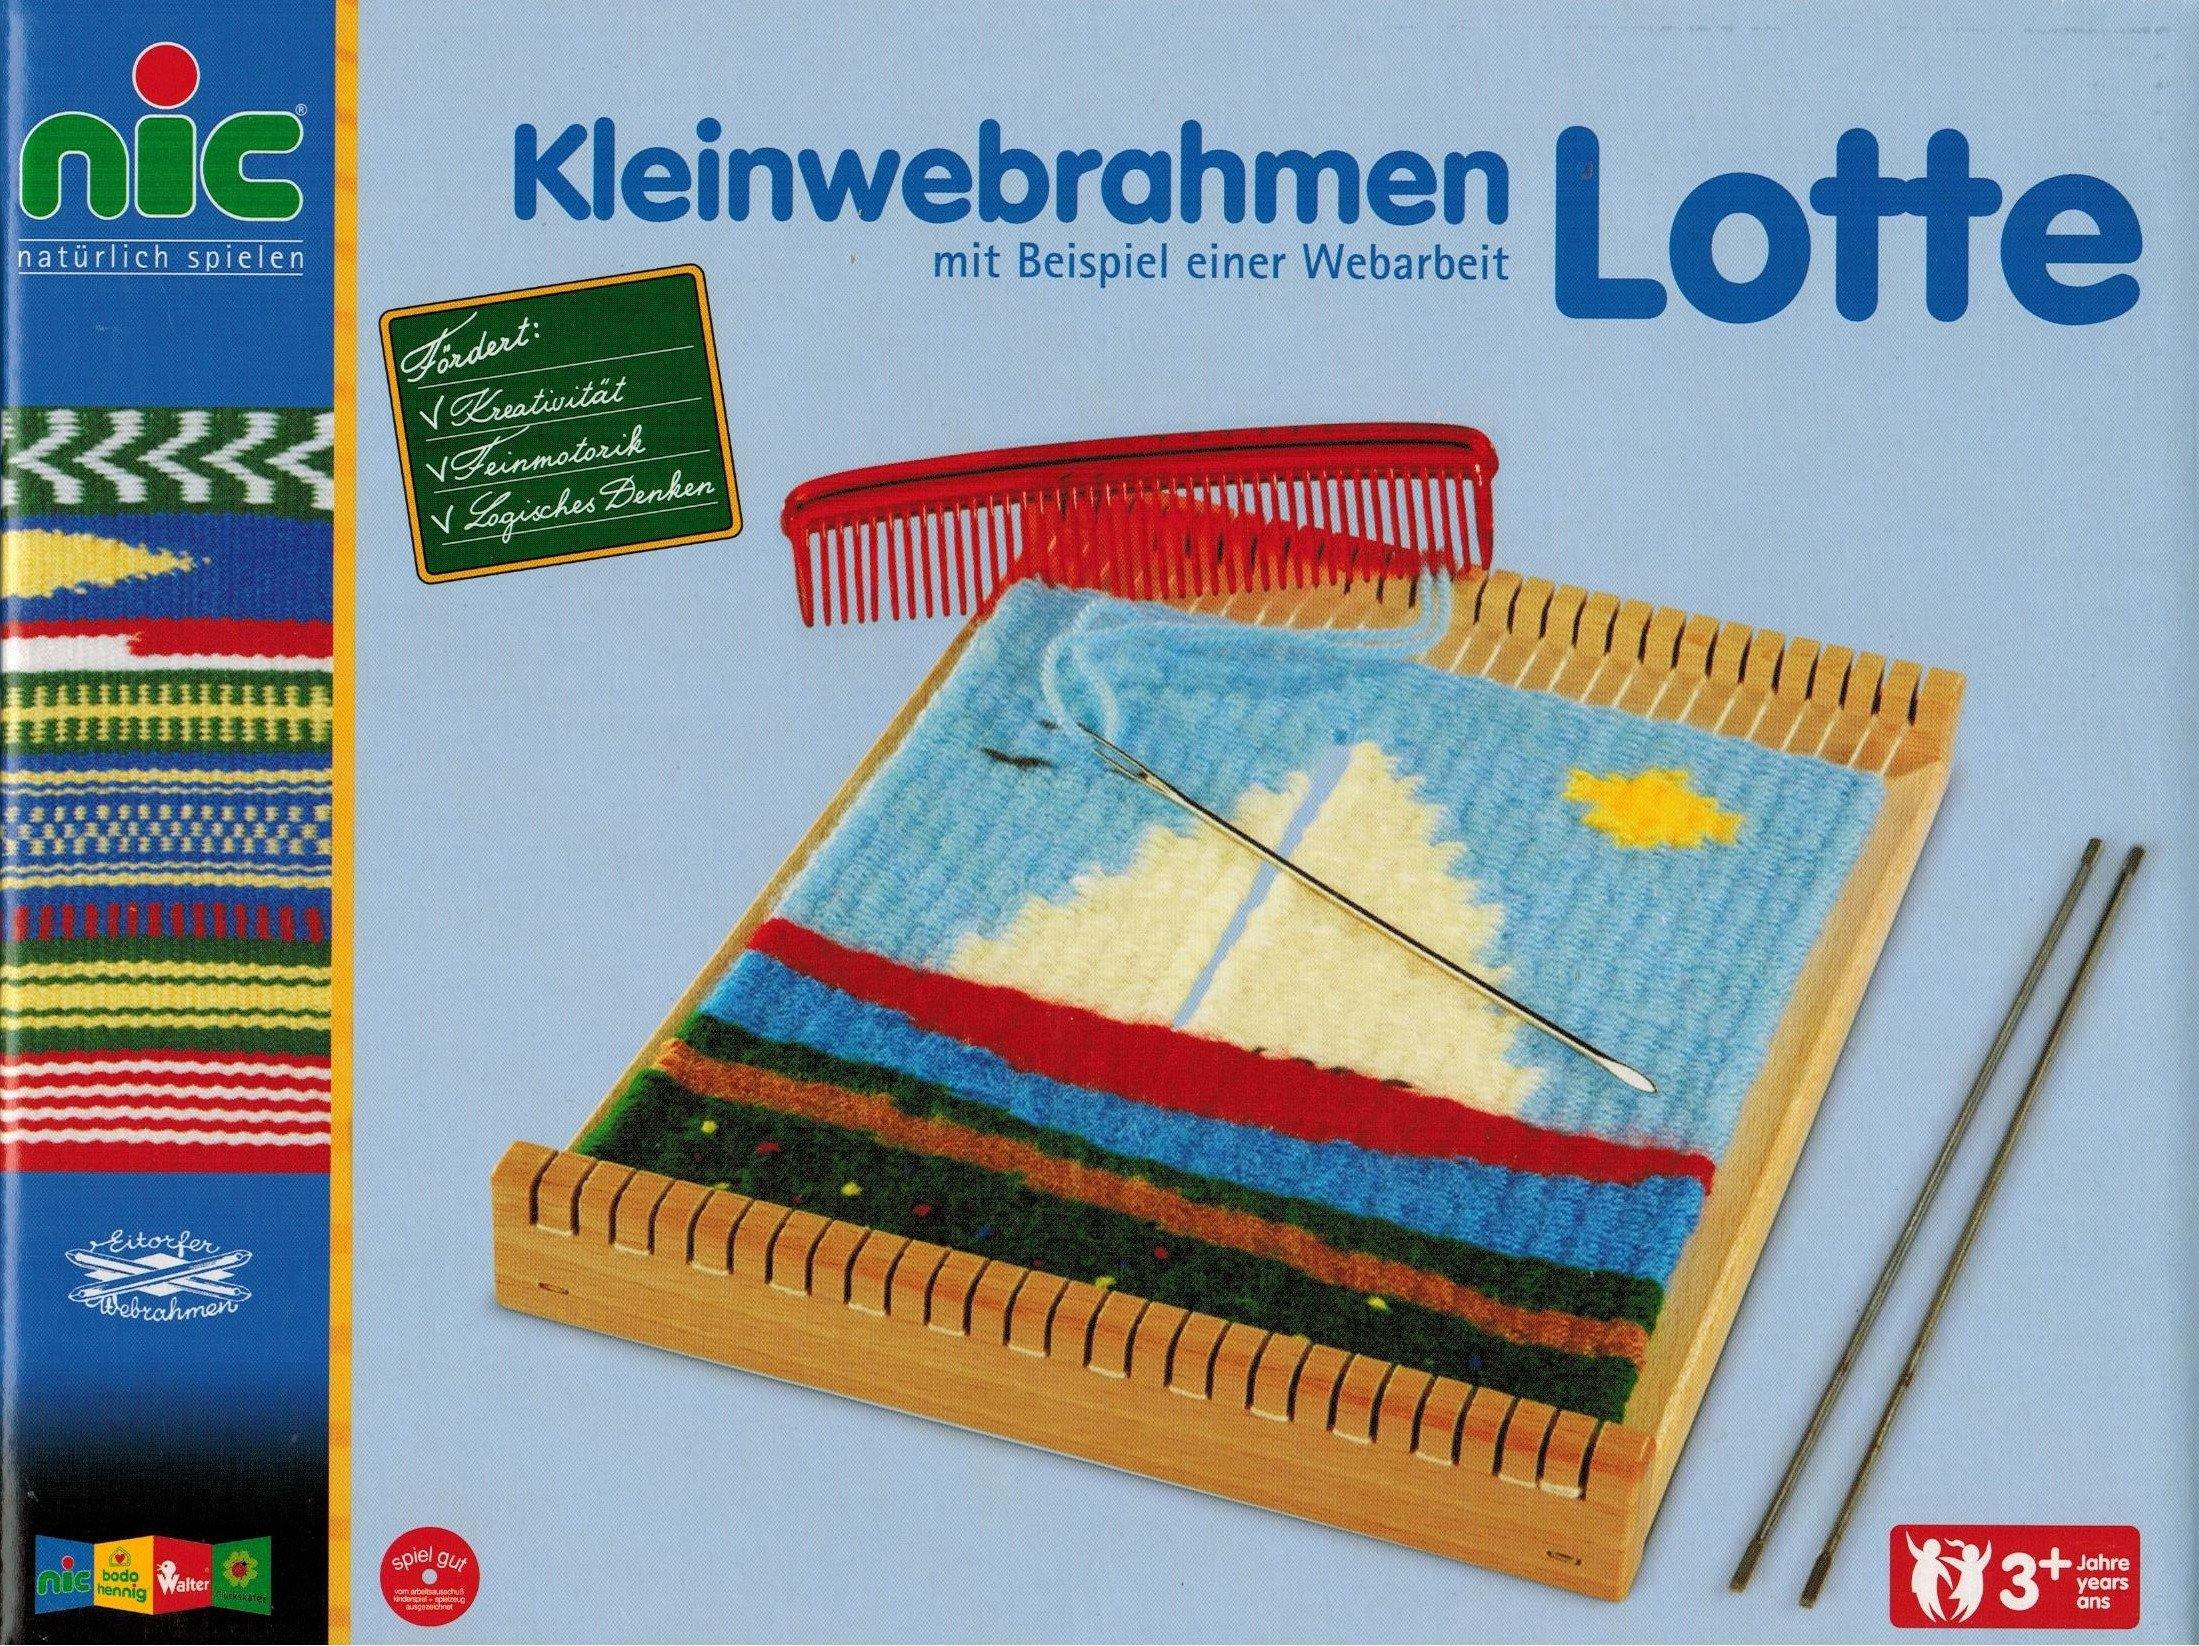 Kleinwebrahmen Lotte - www. kunstundspiel .de 205950